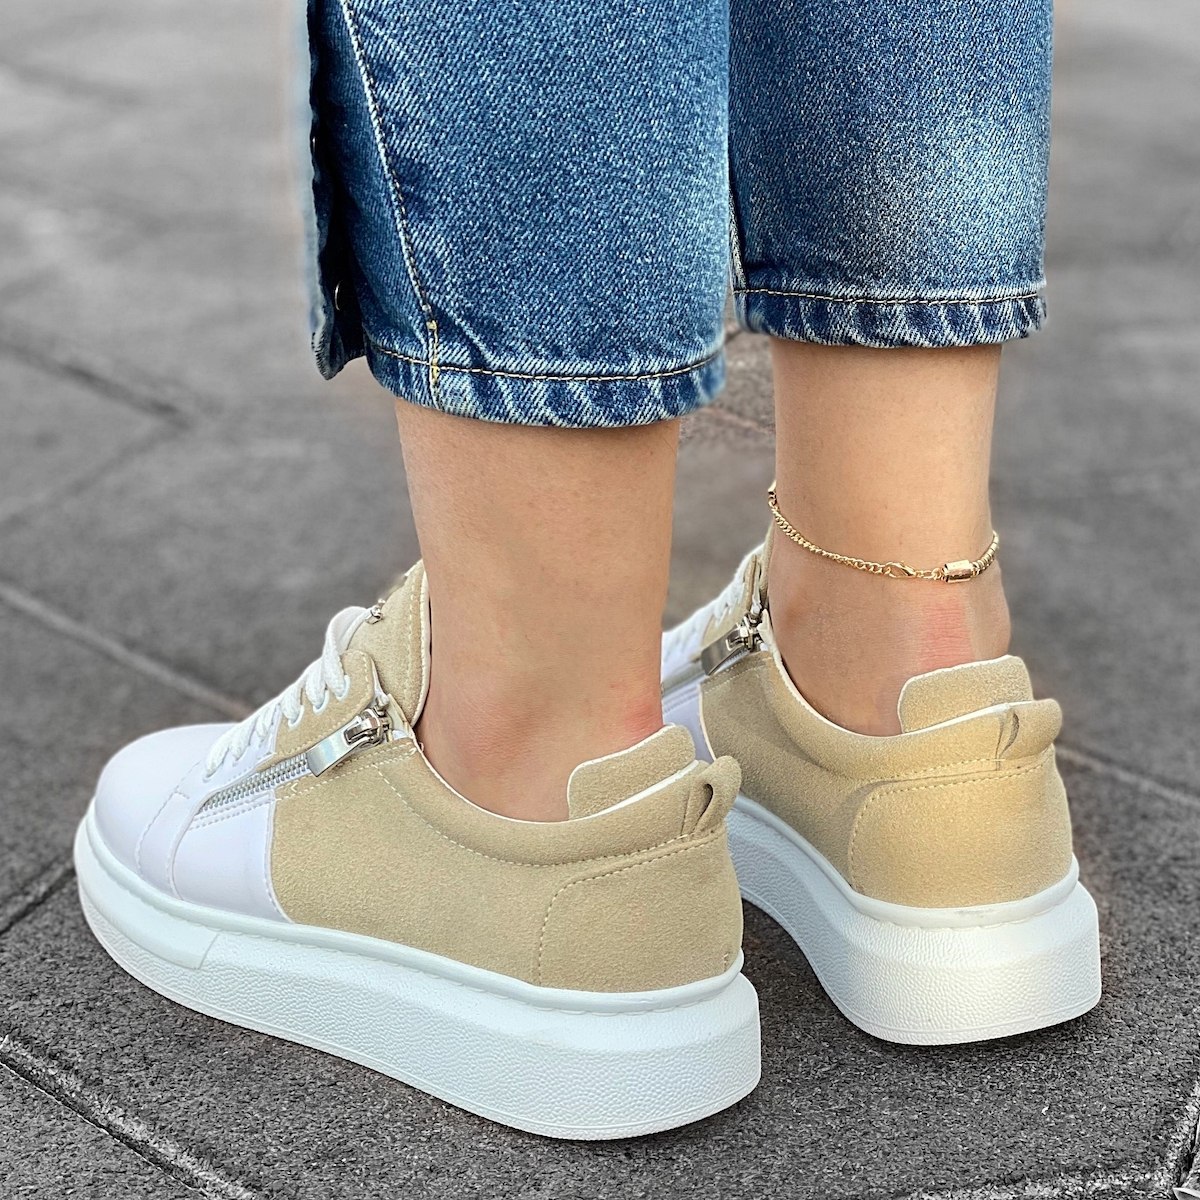 Women's Hype Sole Zipped Style Sneakers In Latte-White - 4